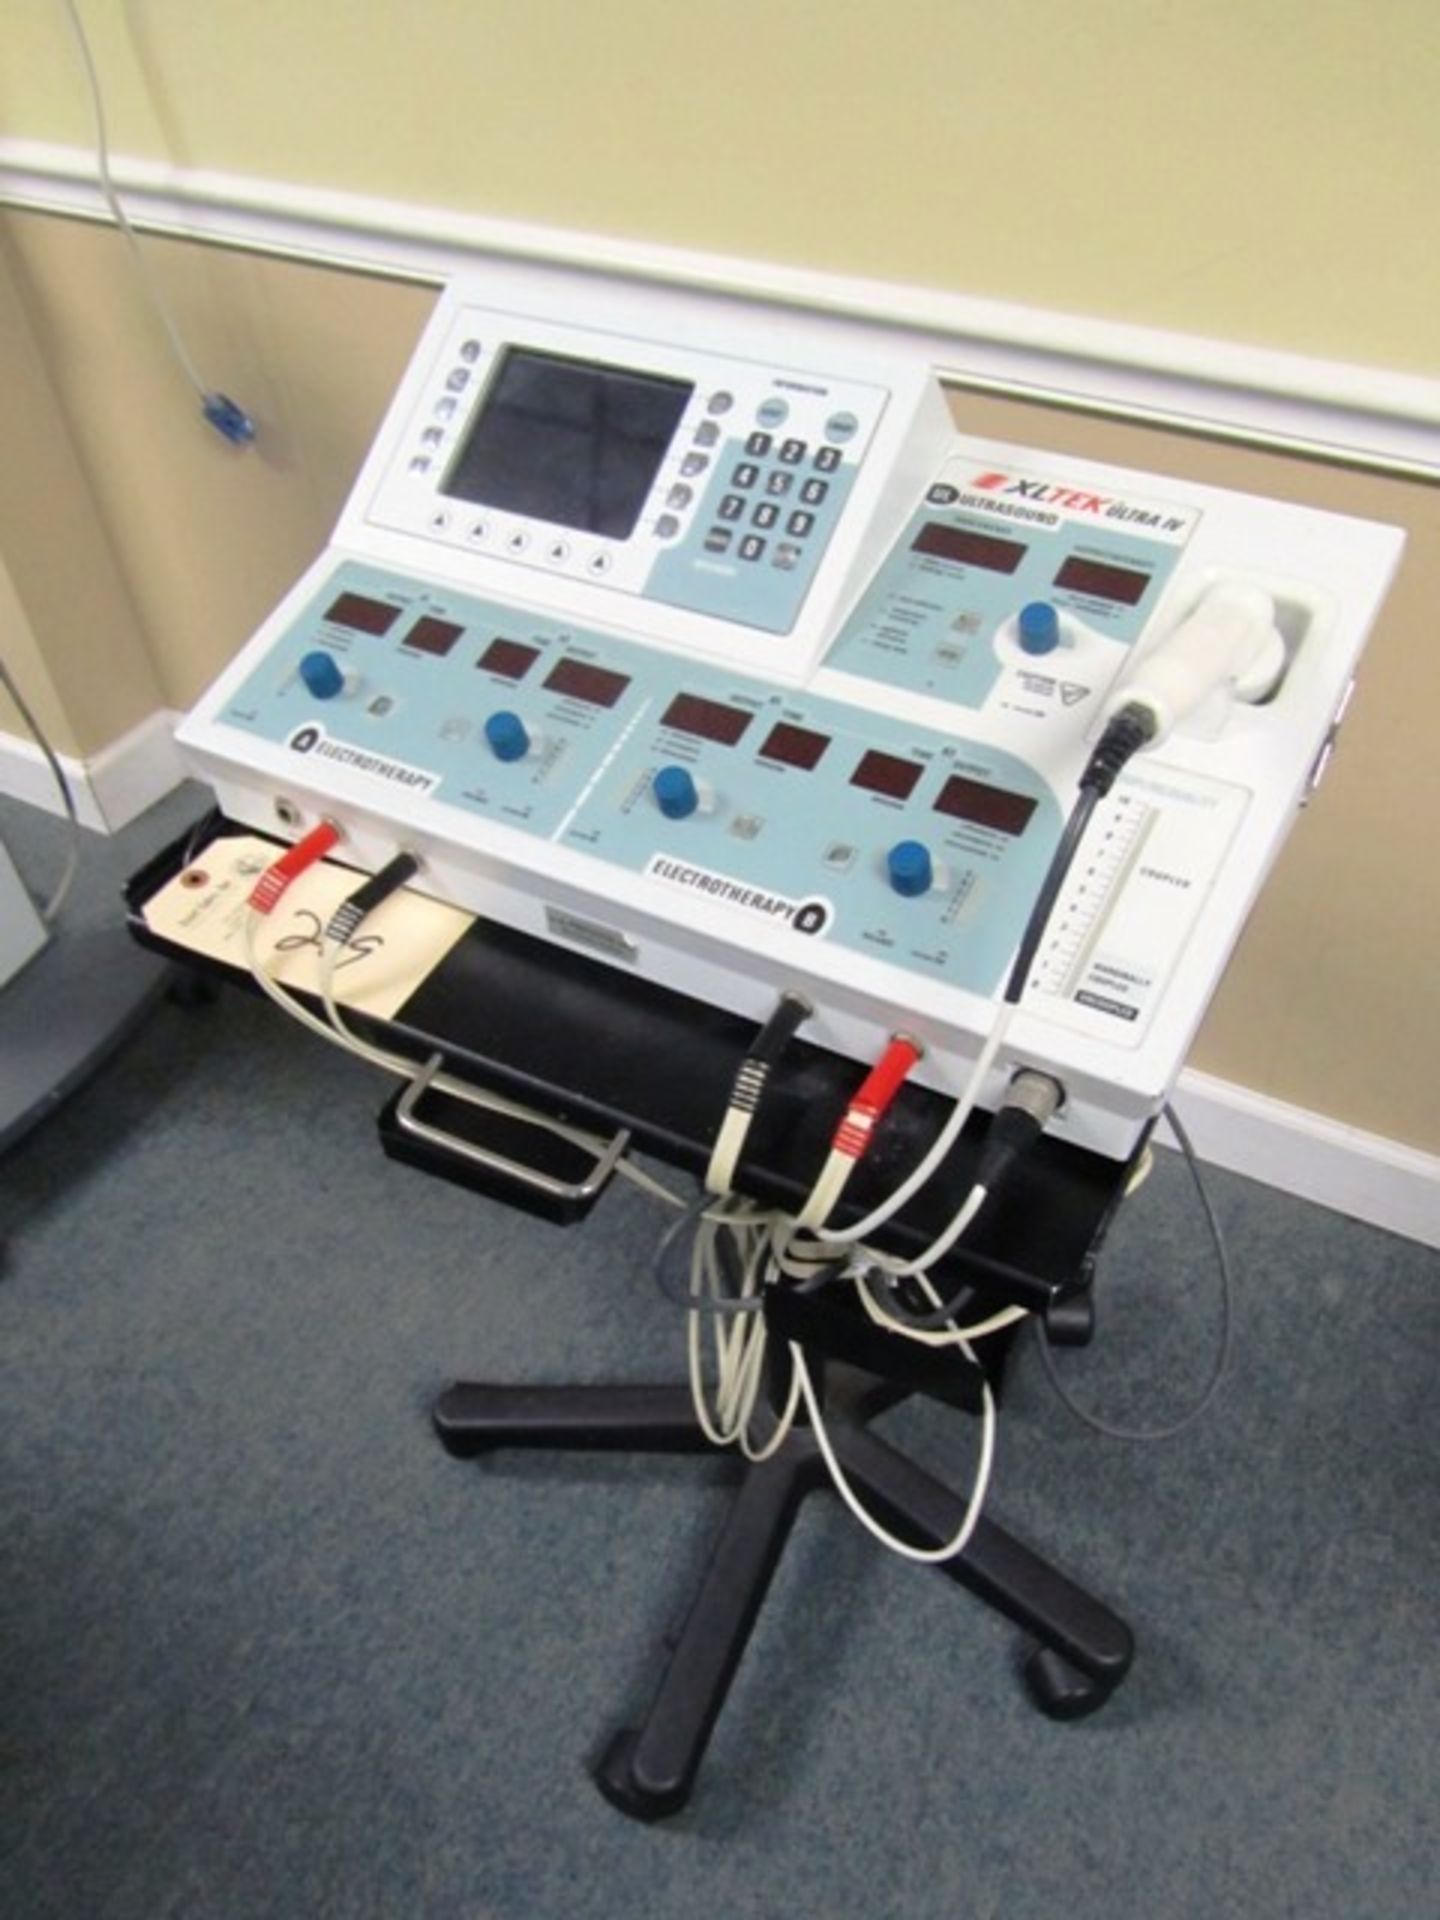 XLtek Ultra IV Portable Ultrasound / Electrical Stimulation Unit, sn:ULIV0405278C3